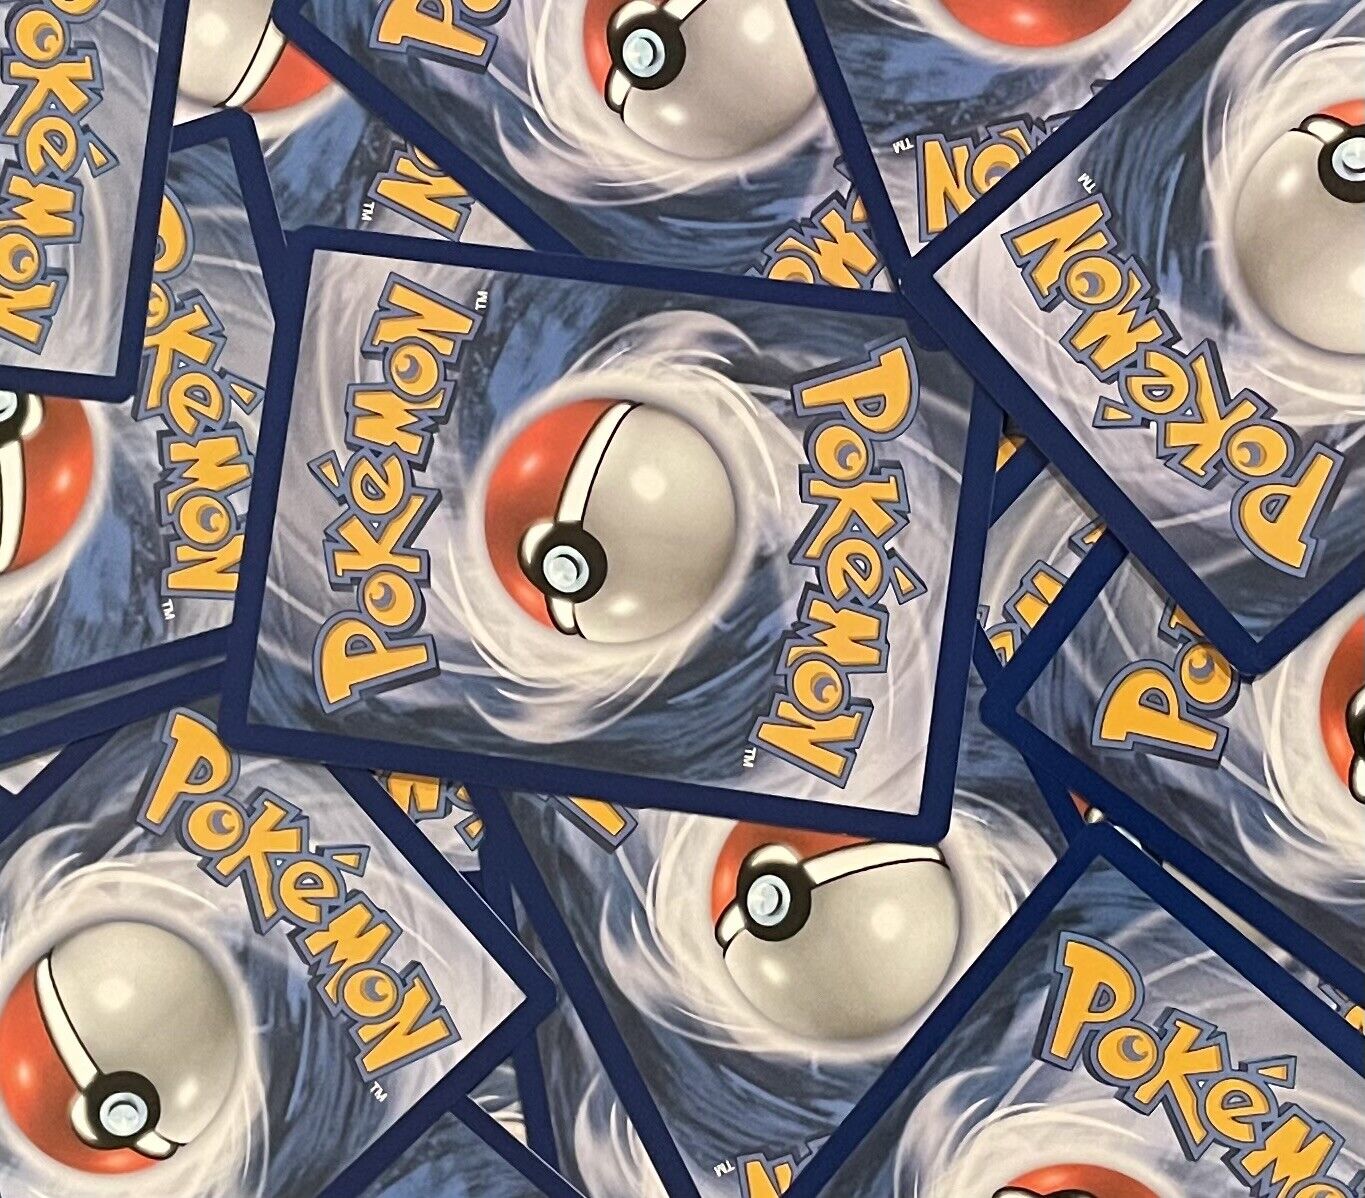 30 Pokemon Cards Plus Reverse Holo & Holo Bonus Card Savings Pack - German